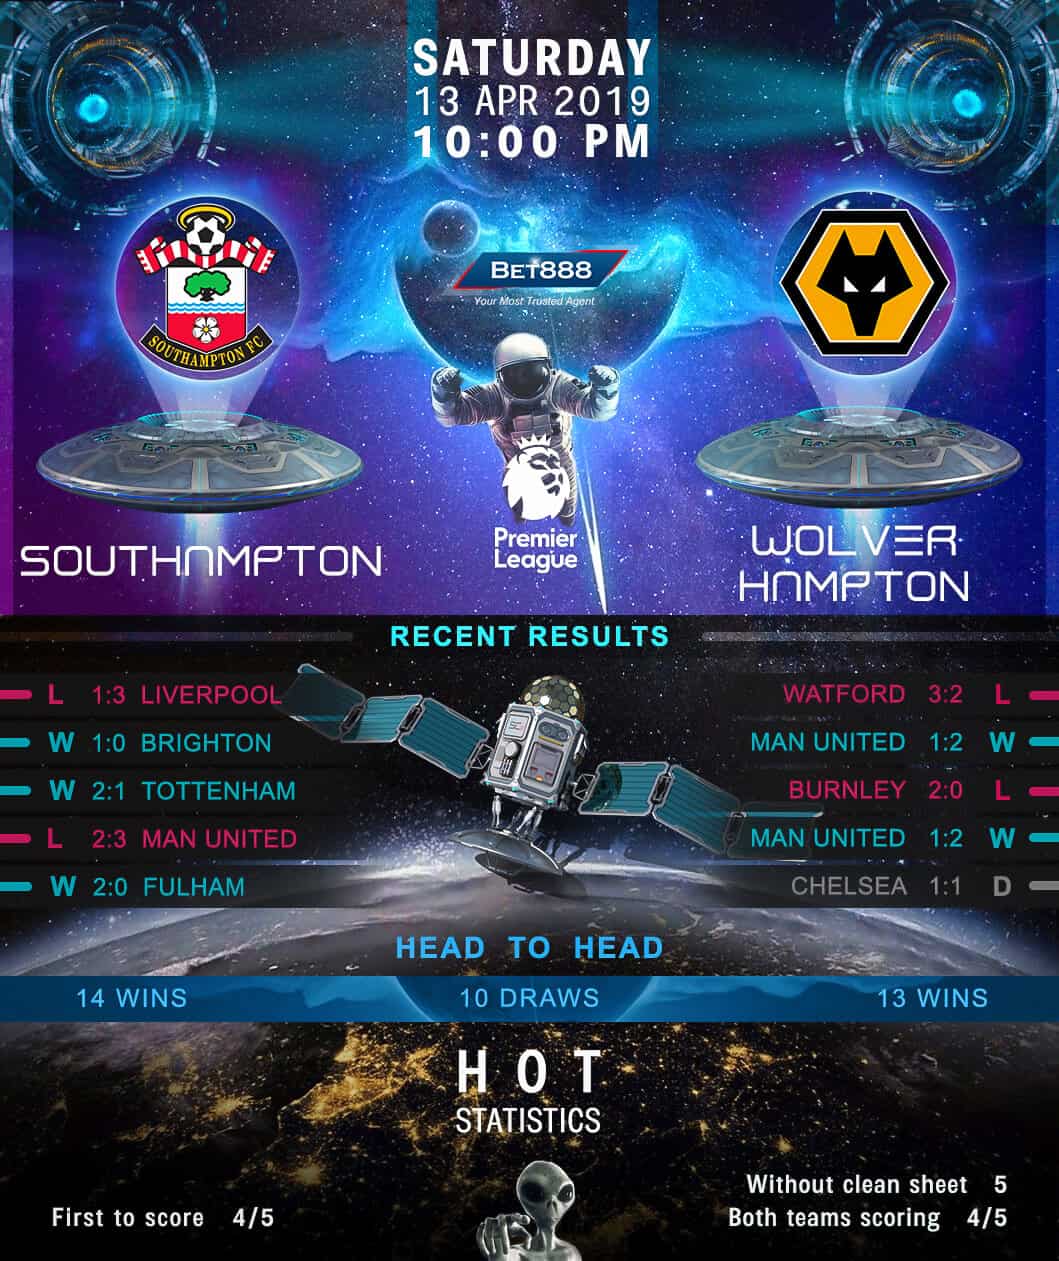 Southampton vs Wolverhampton Wanderers 13/04/19